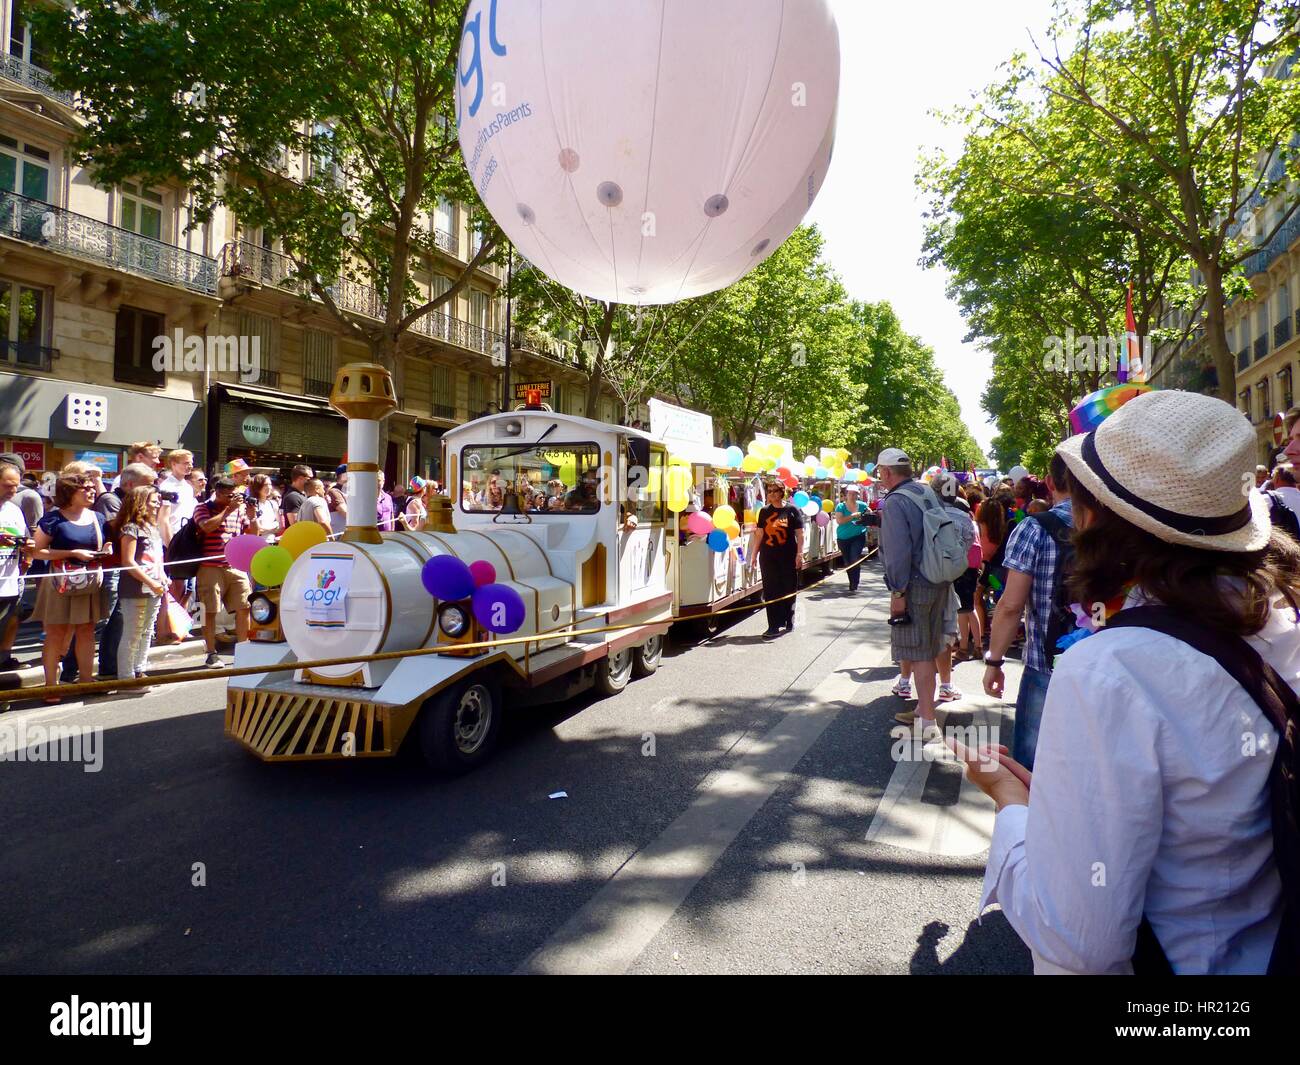 Paris Gay Pride Parade 2015, Marche des Fiertés. Association Parents Gays and Lesbians tourist train 'float' filled with families. Paris, France. Stock Photo